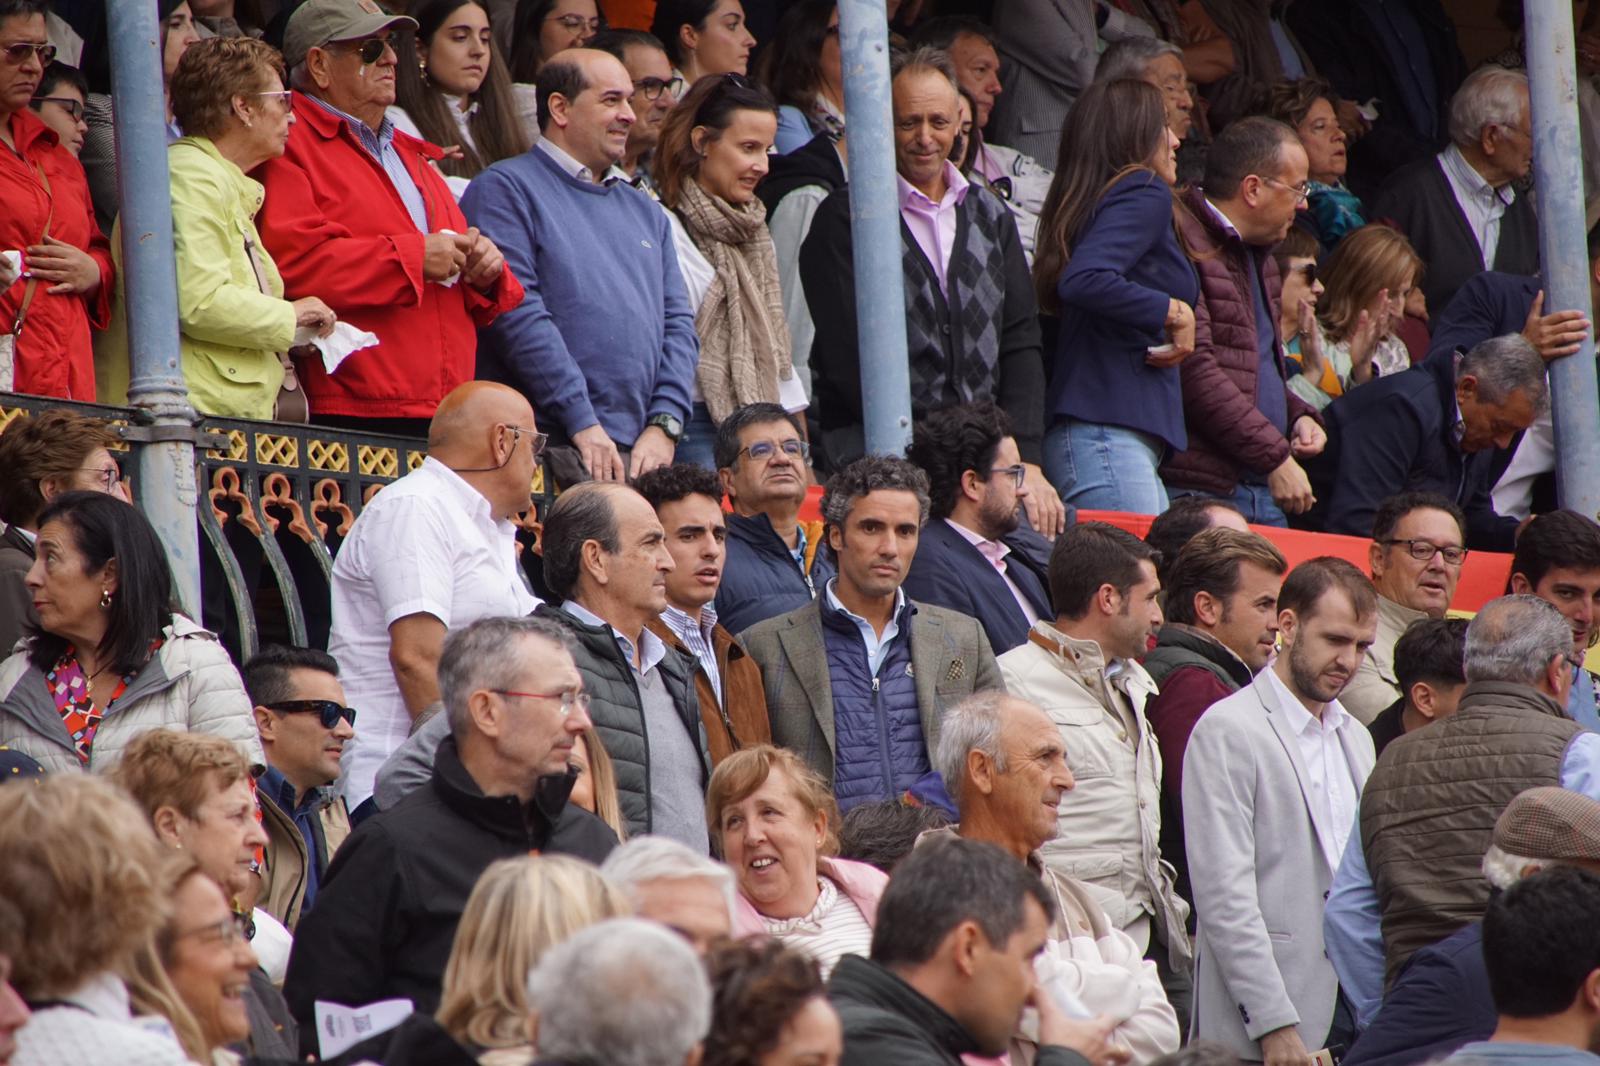 GALERÍA | Resumen fotográfico del ambiente en los tendidos de La Glorieta durante la corrida concurso de despedida de López Chaves y El Juli. Foto Juanes